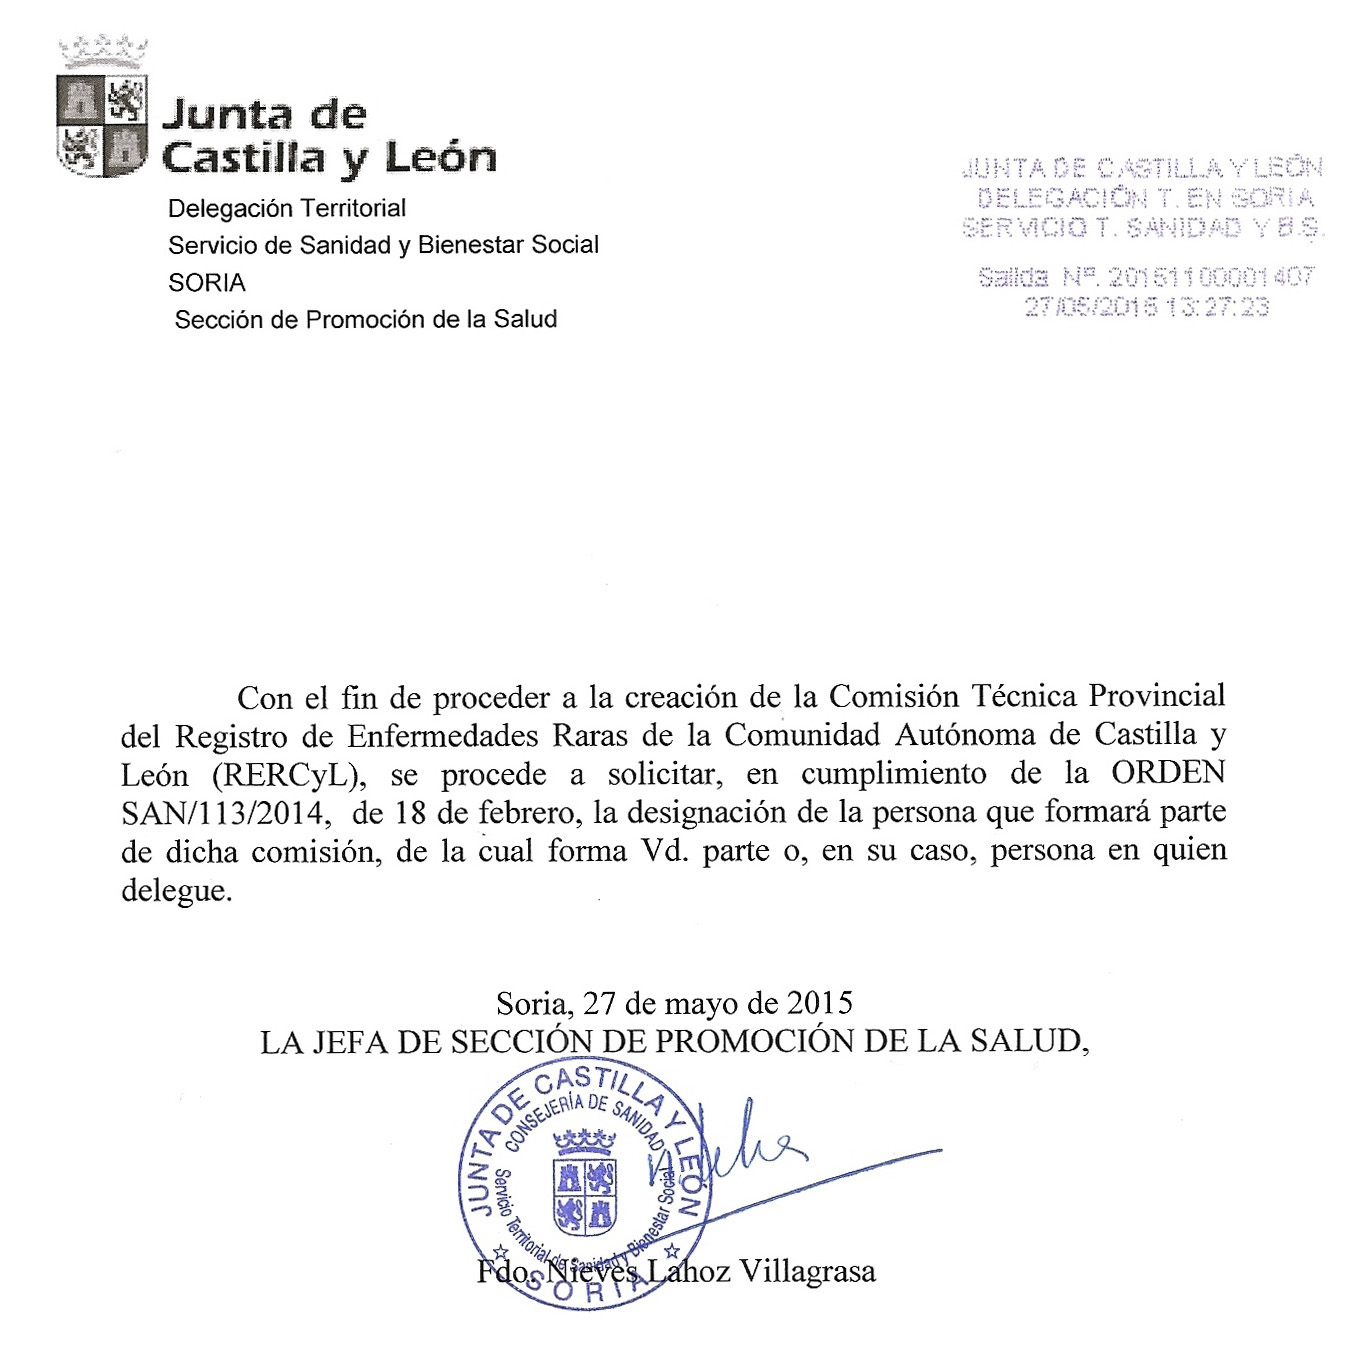 Documento de aprobación de la Comisión Técnica Provincial del Registro de Enfermedades Raras de la Comunidad Autonóma de Castilla y León